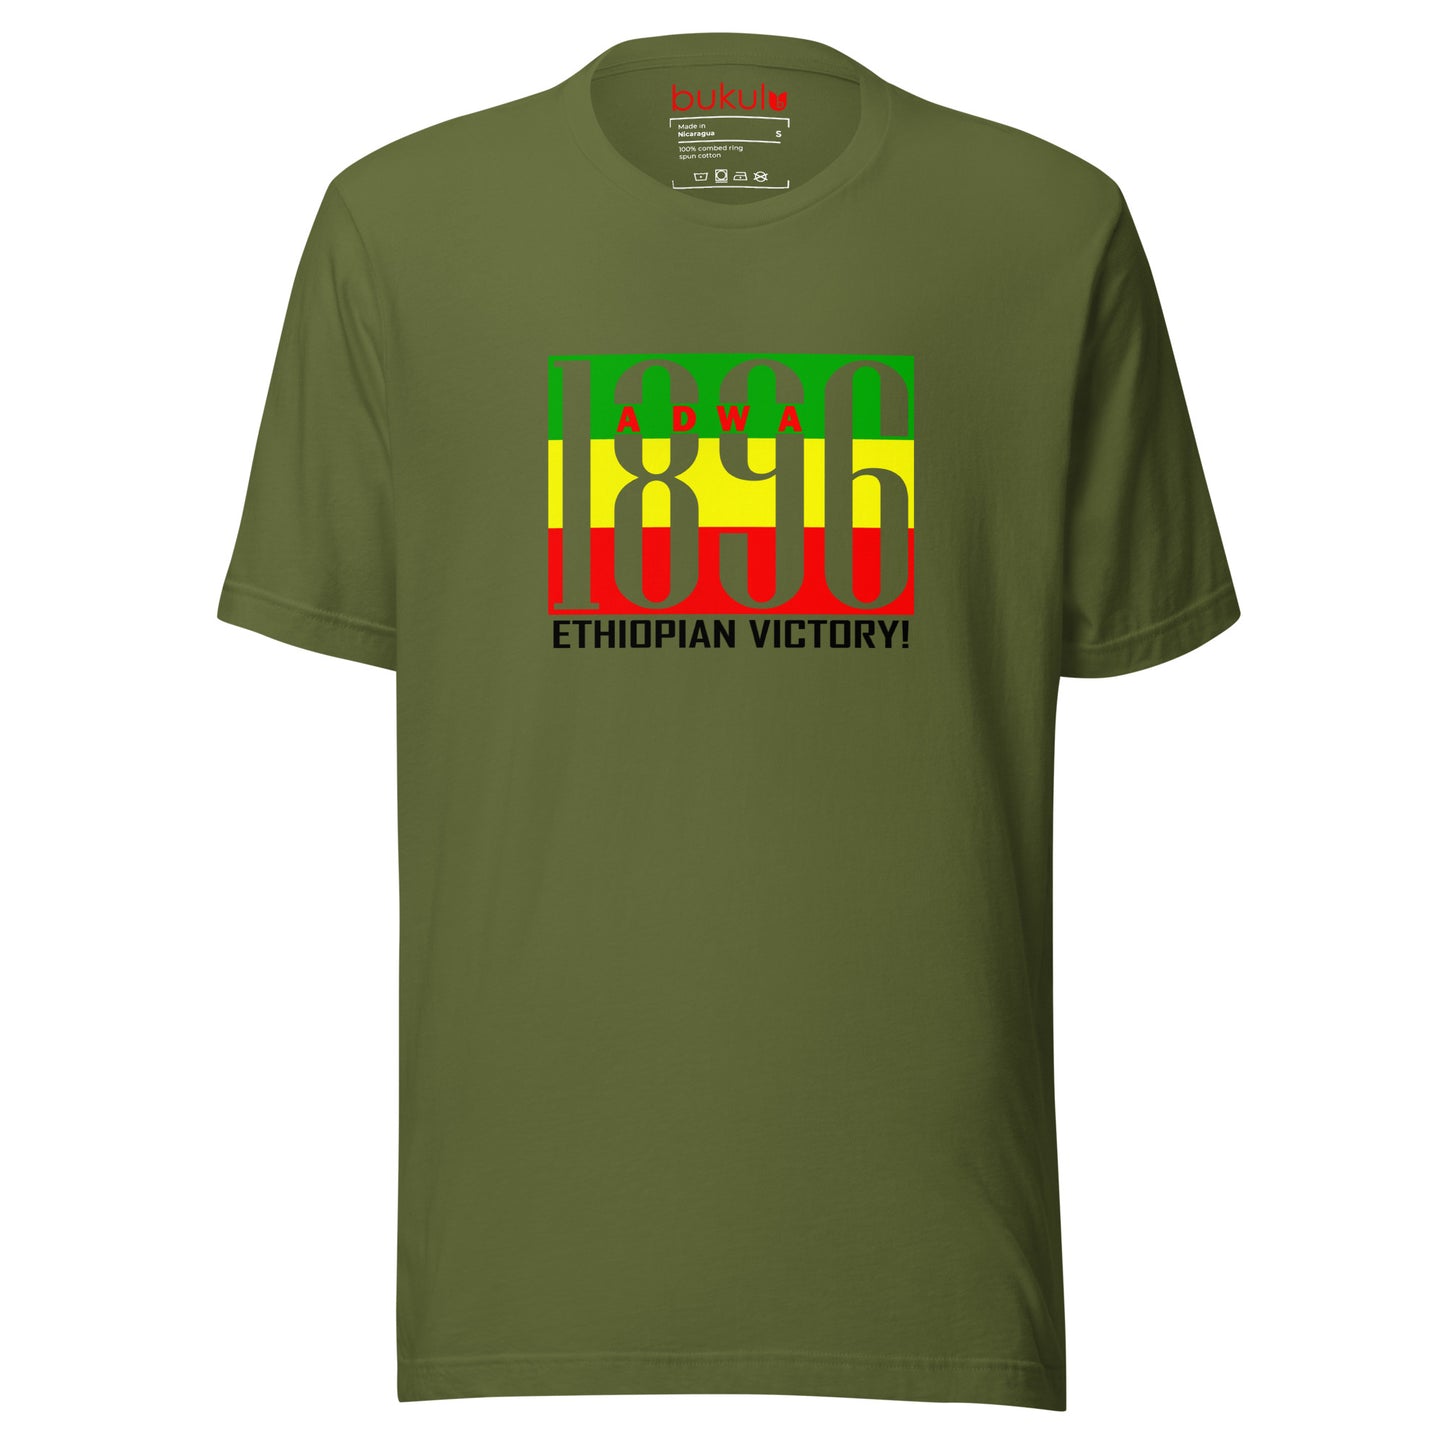 Adwa 1896 Ethiopian Victory Unisex T-Shirt - Celebrate History & Heritage